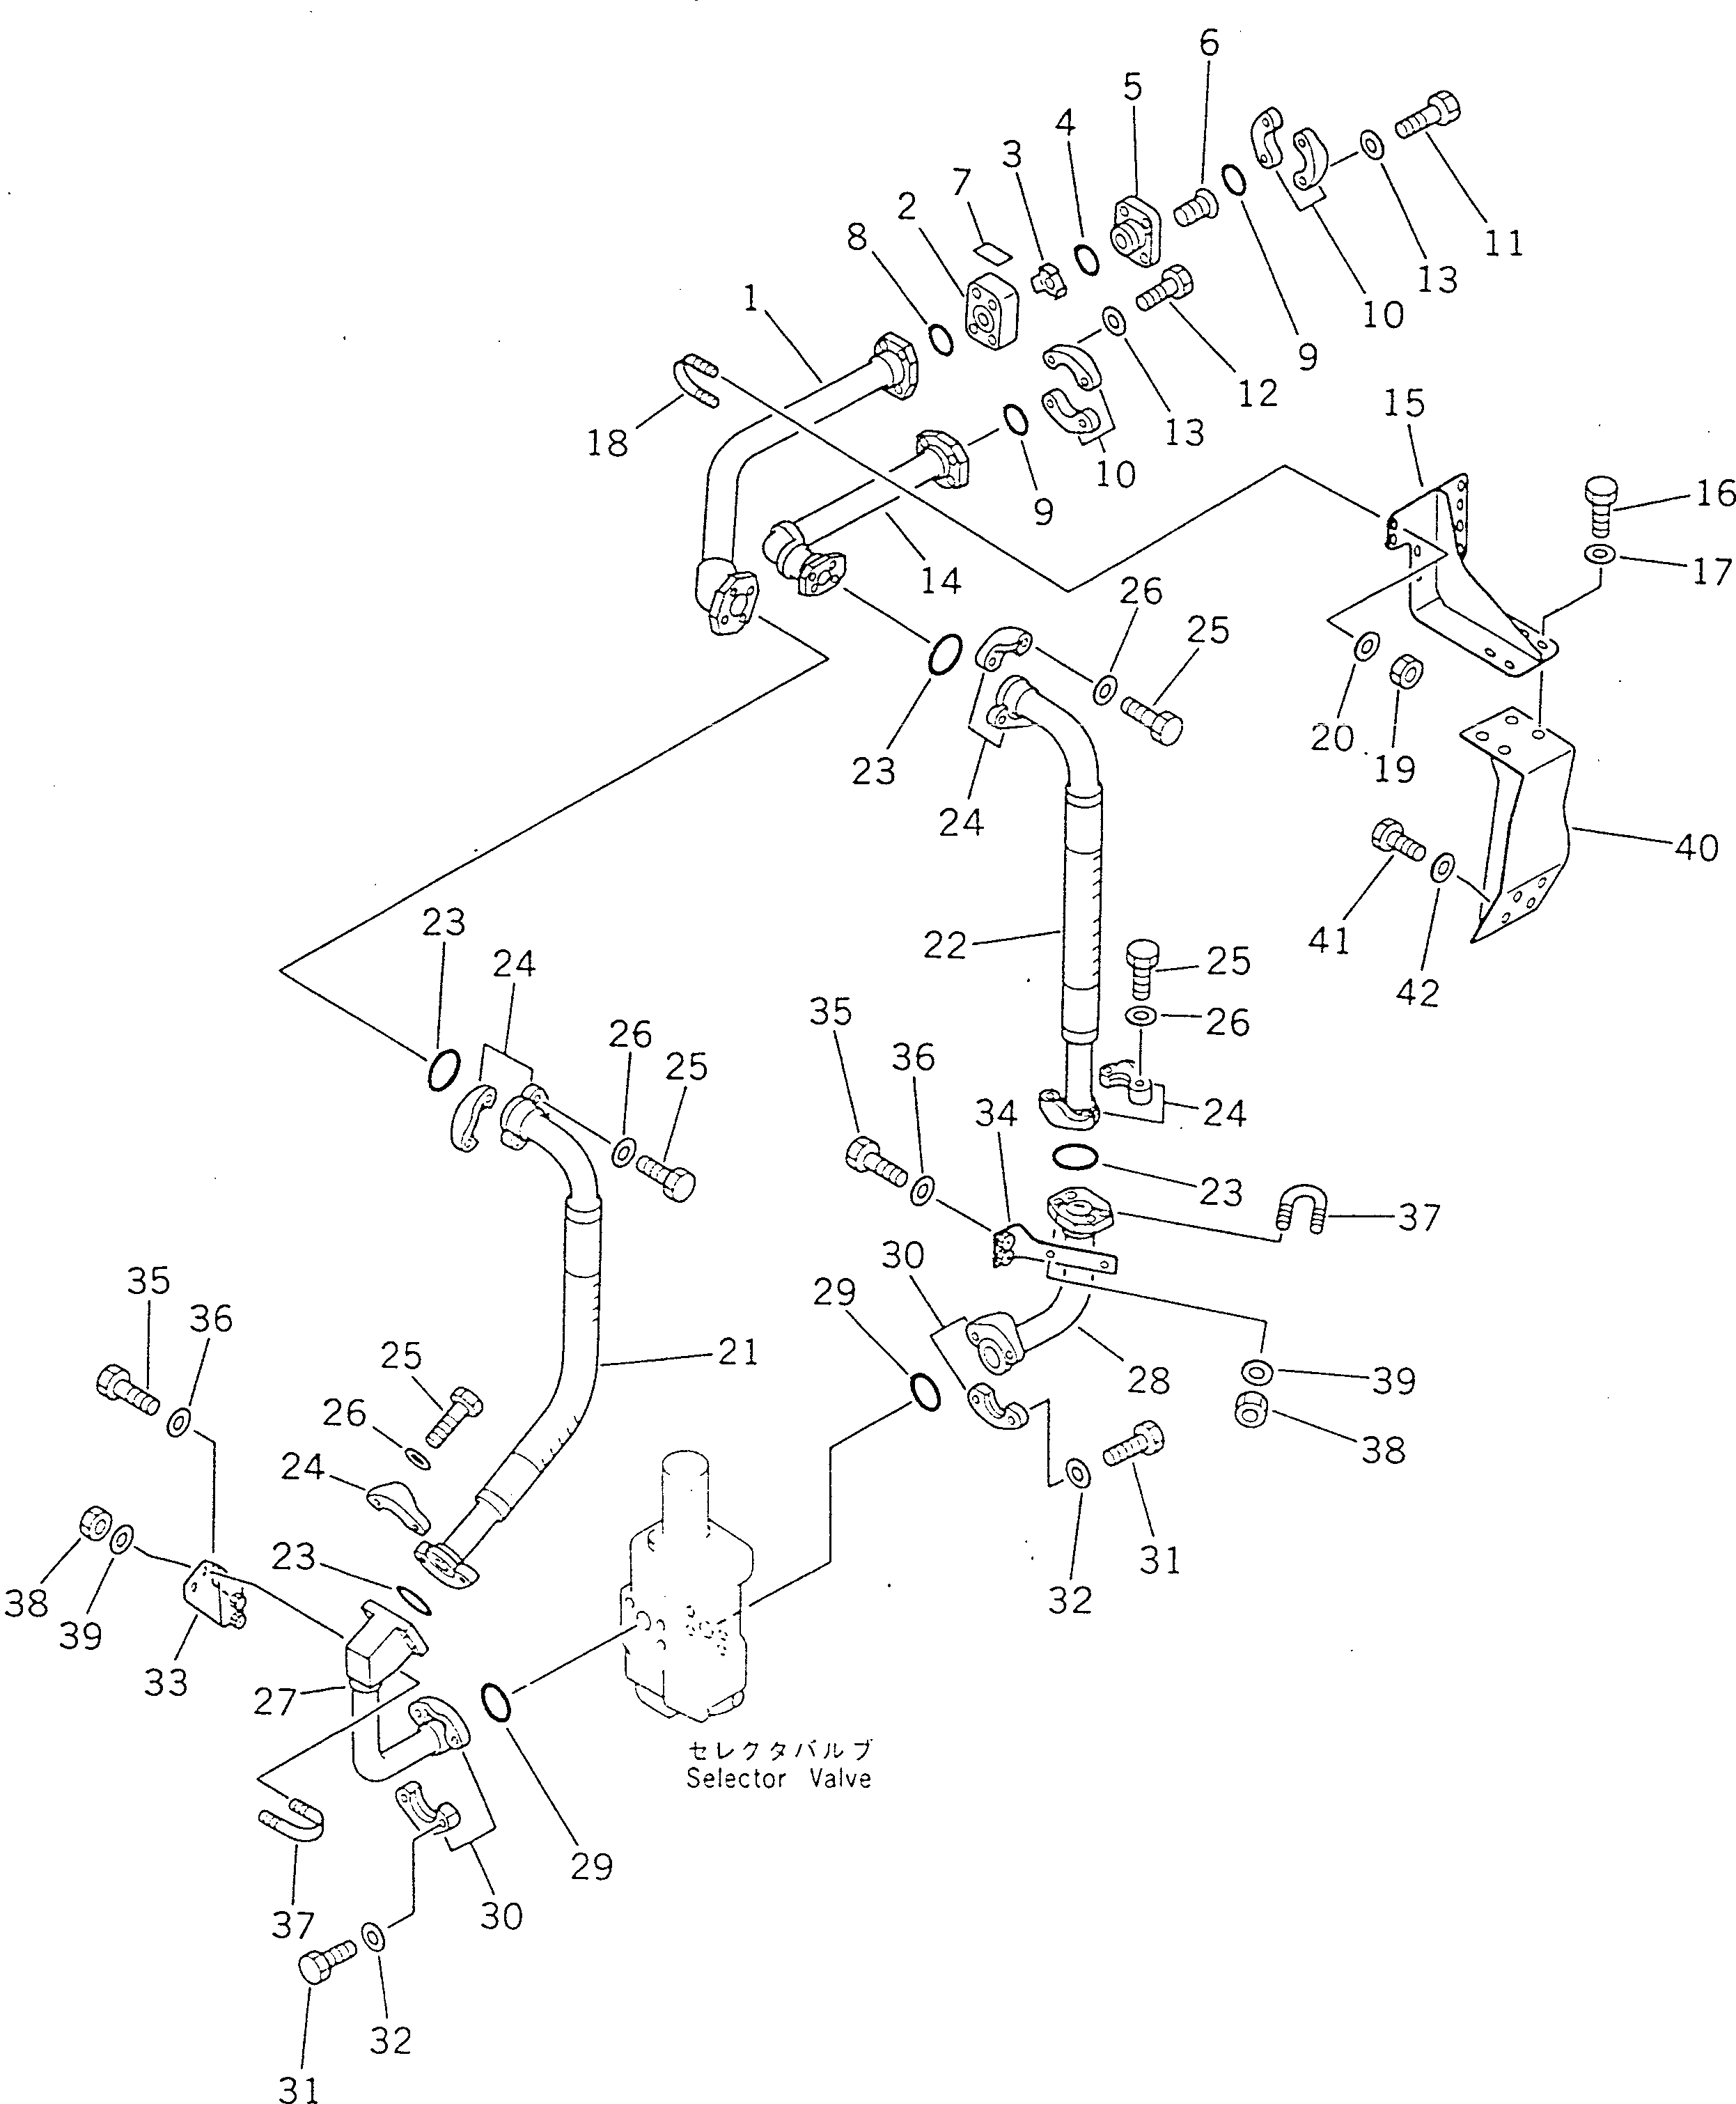 200. RIPPER MAIN PIPING [7531] - Komatsu part D355A-5 S/N 12622-UP [d355a-5c]